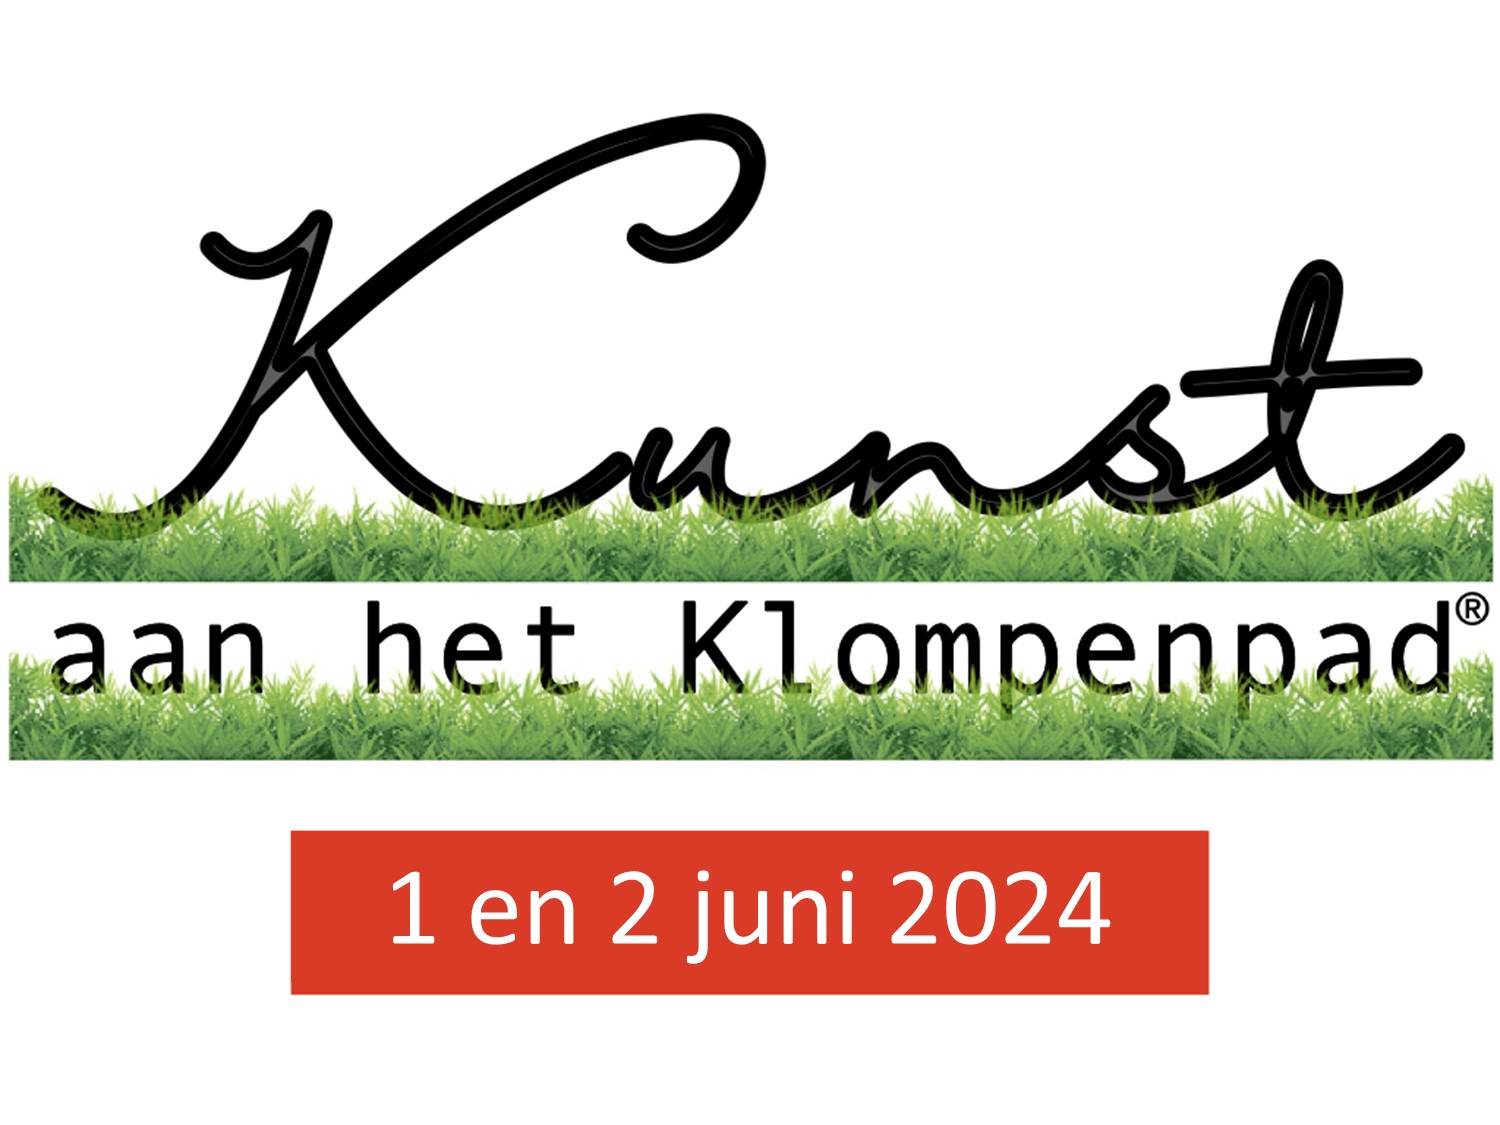 Kunstige Kruisbestuiving bij Kunst aan het Klompenpad in Wageningen op 1 en 2 juni! 